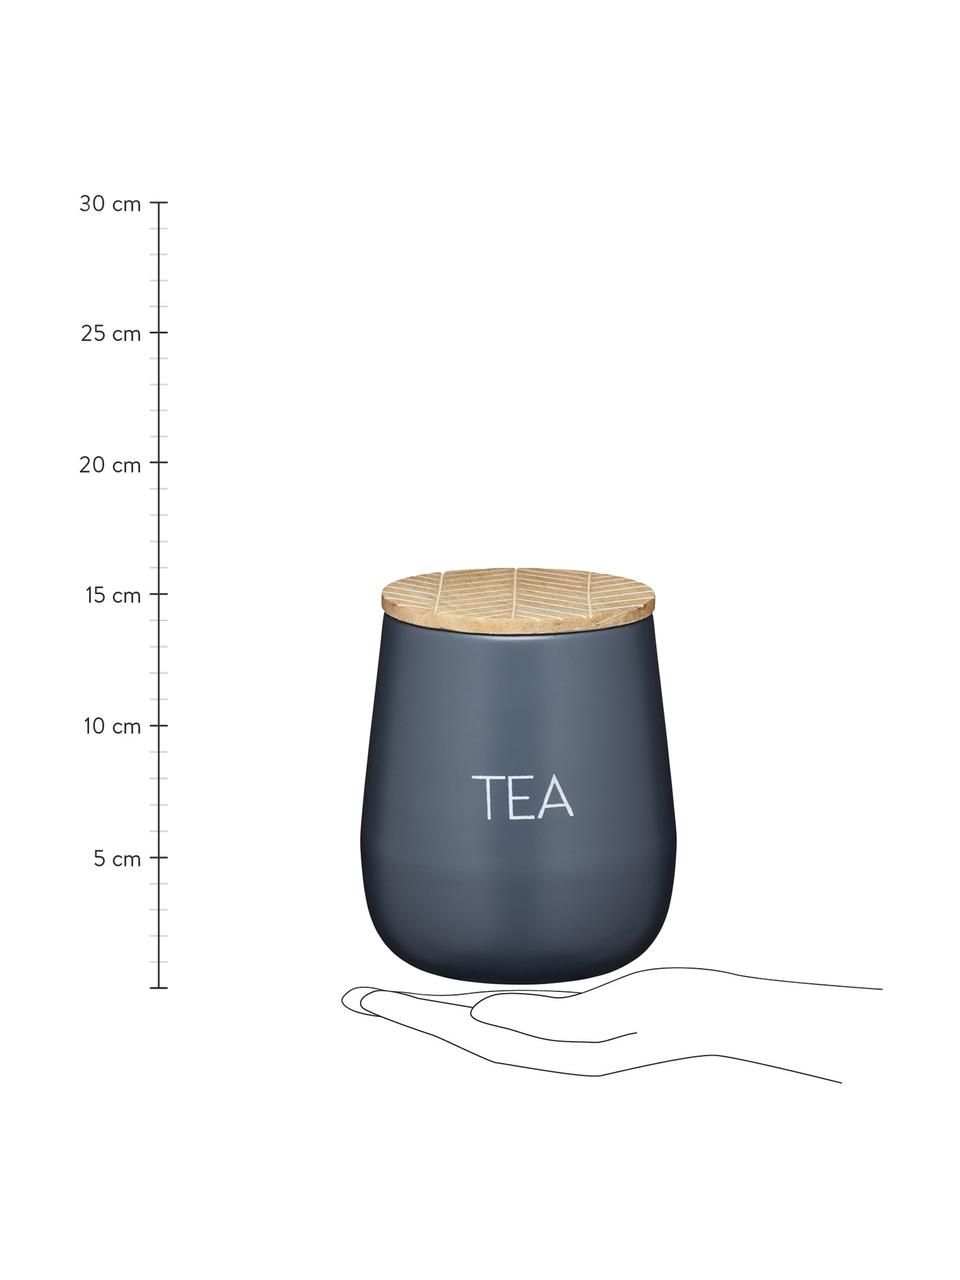 Dóza Serenity Tea, Ø 13 cm x V 15 cm, Antracitová, dřevo, Ø 13 cm, V 15 cm, 1,6 l